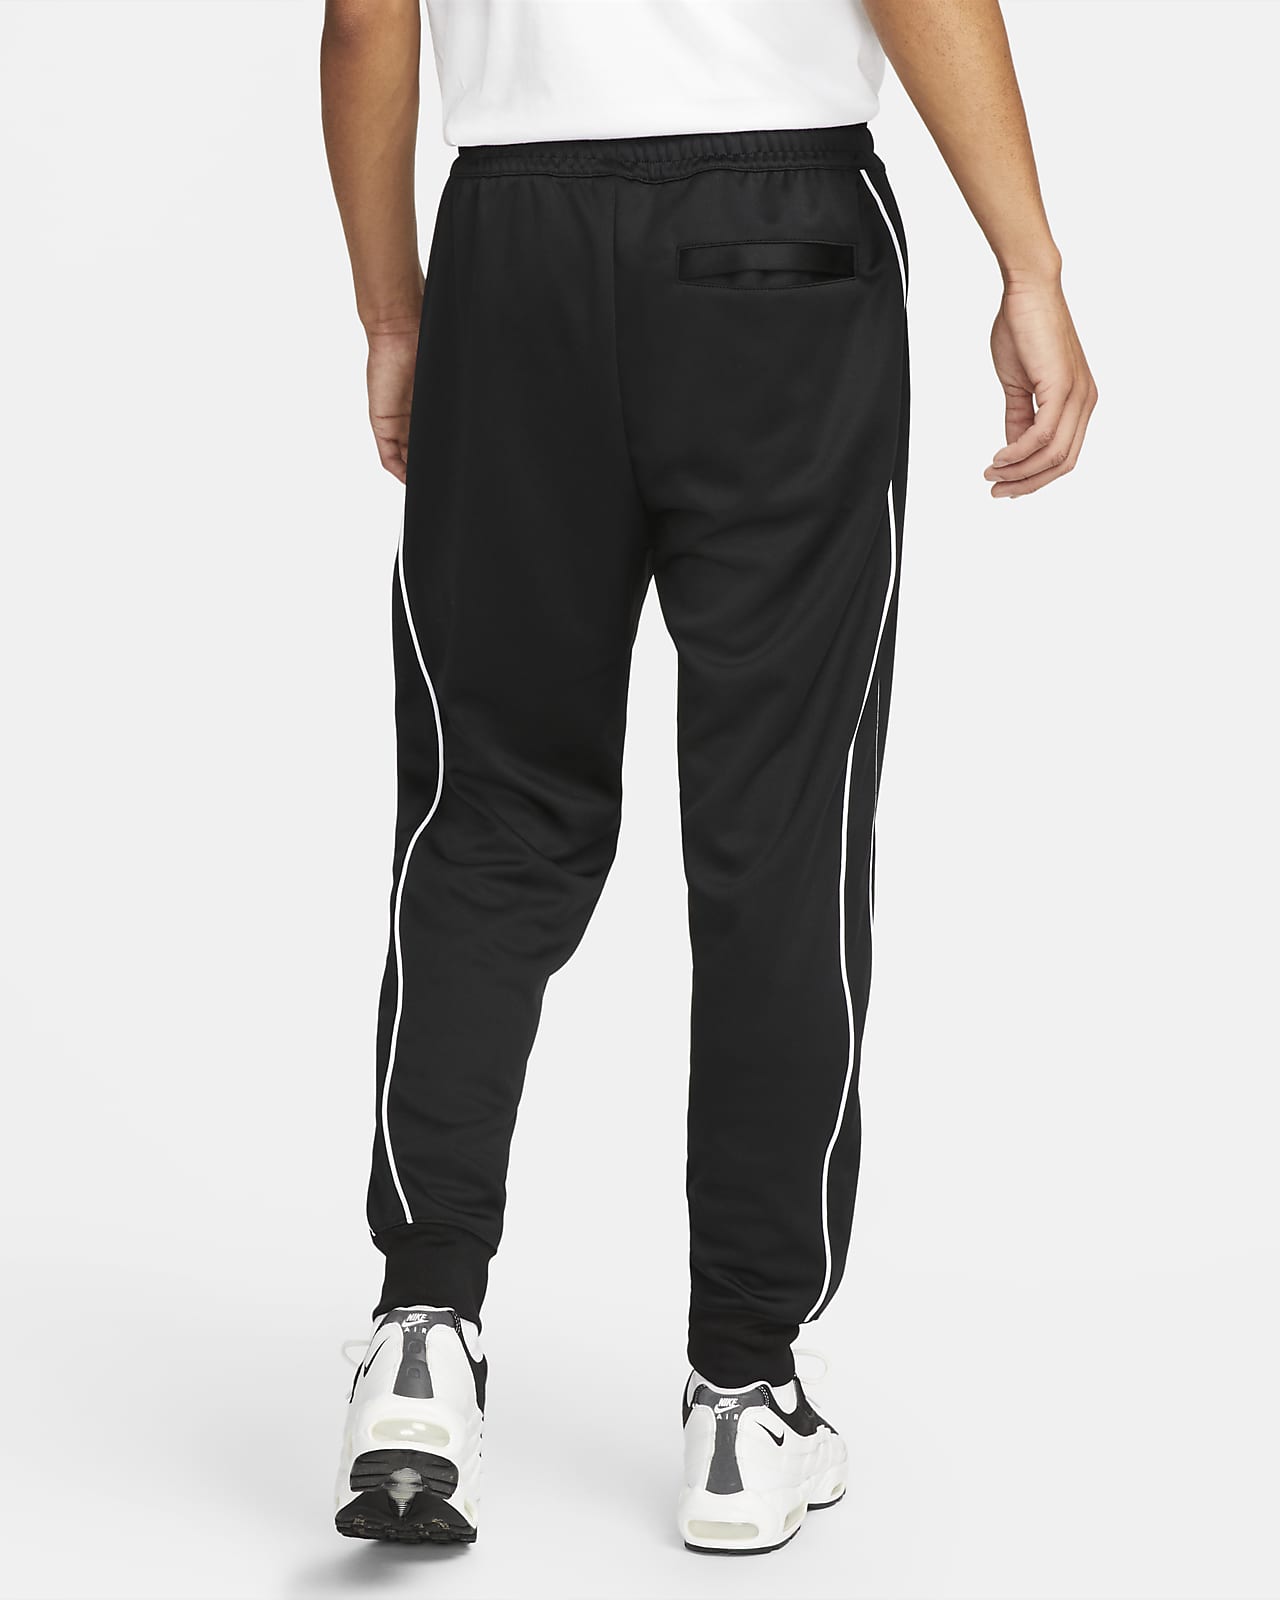 Pants de tejido de para hombre Club. Nike.com